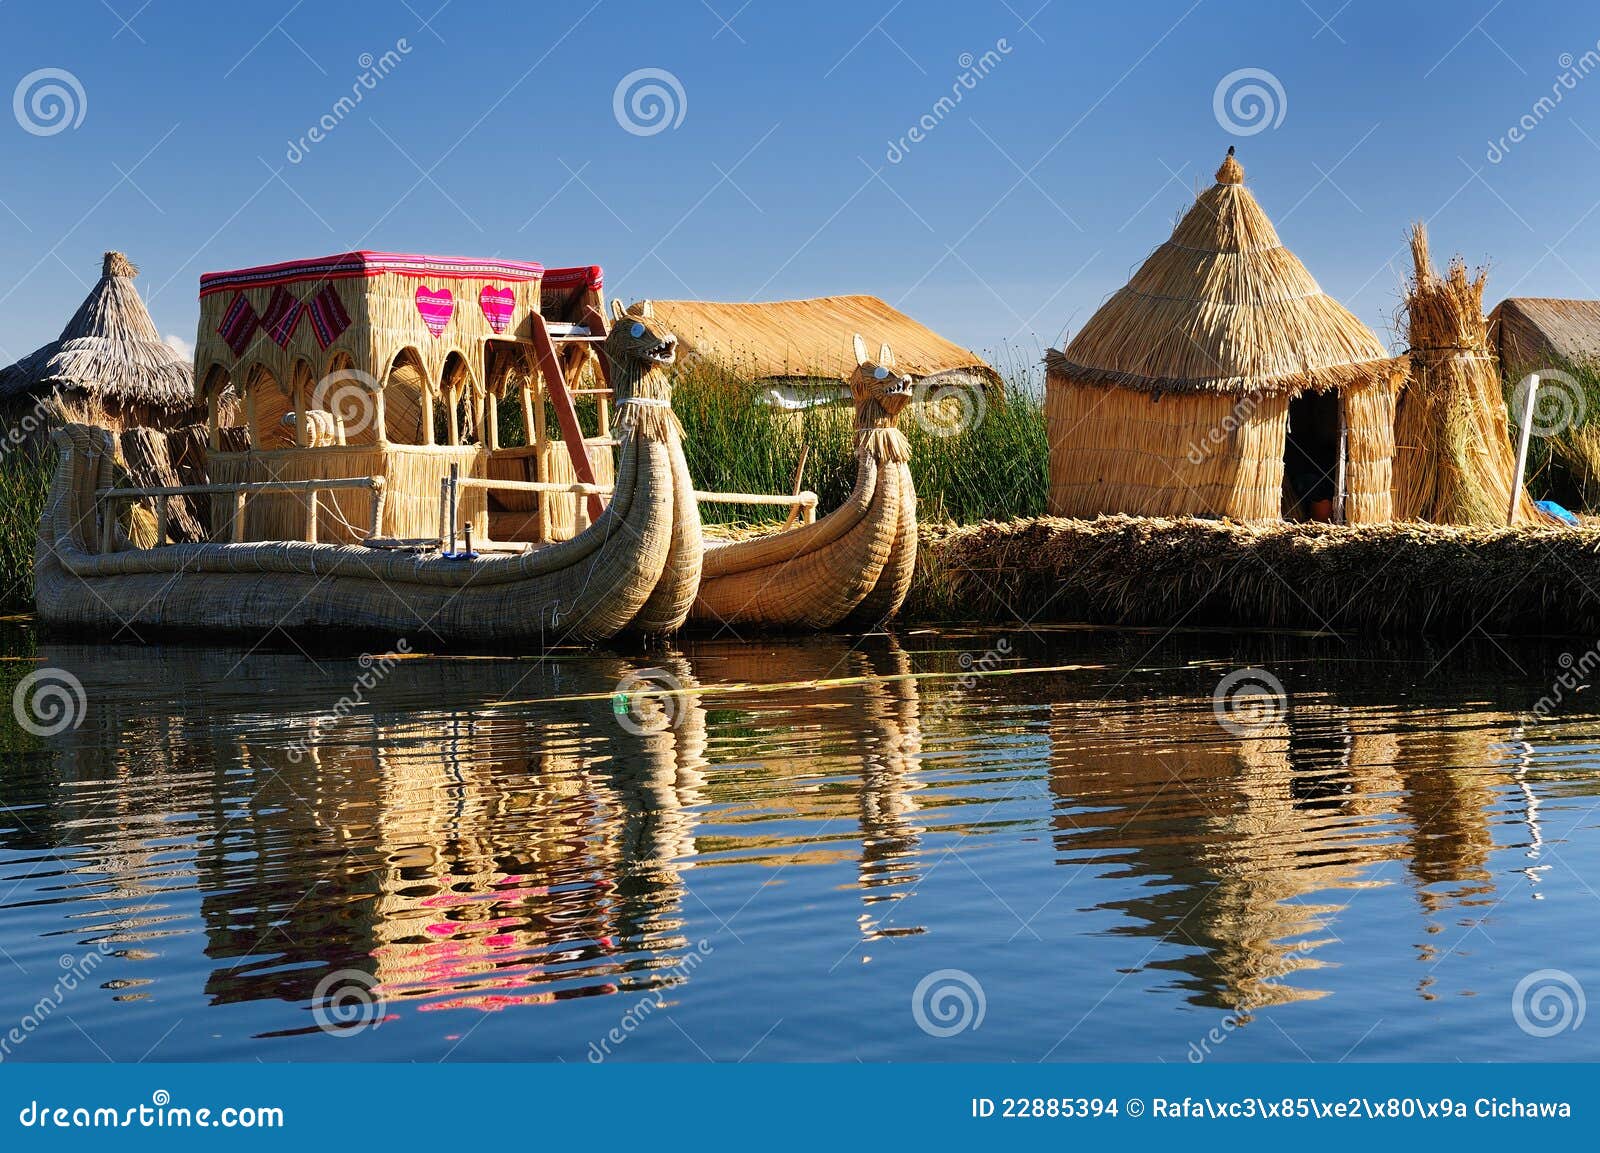 titicaca lake, peru, floating islands uros